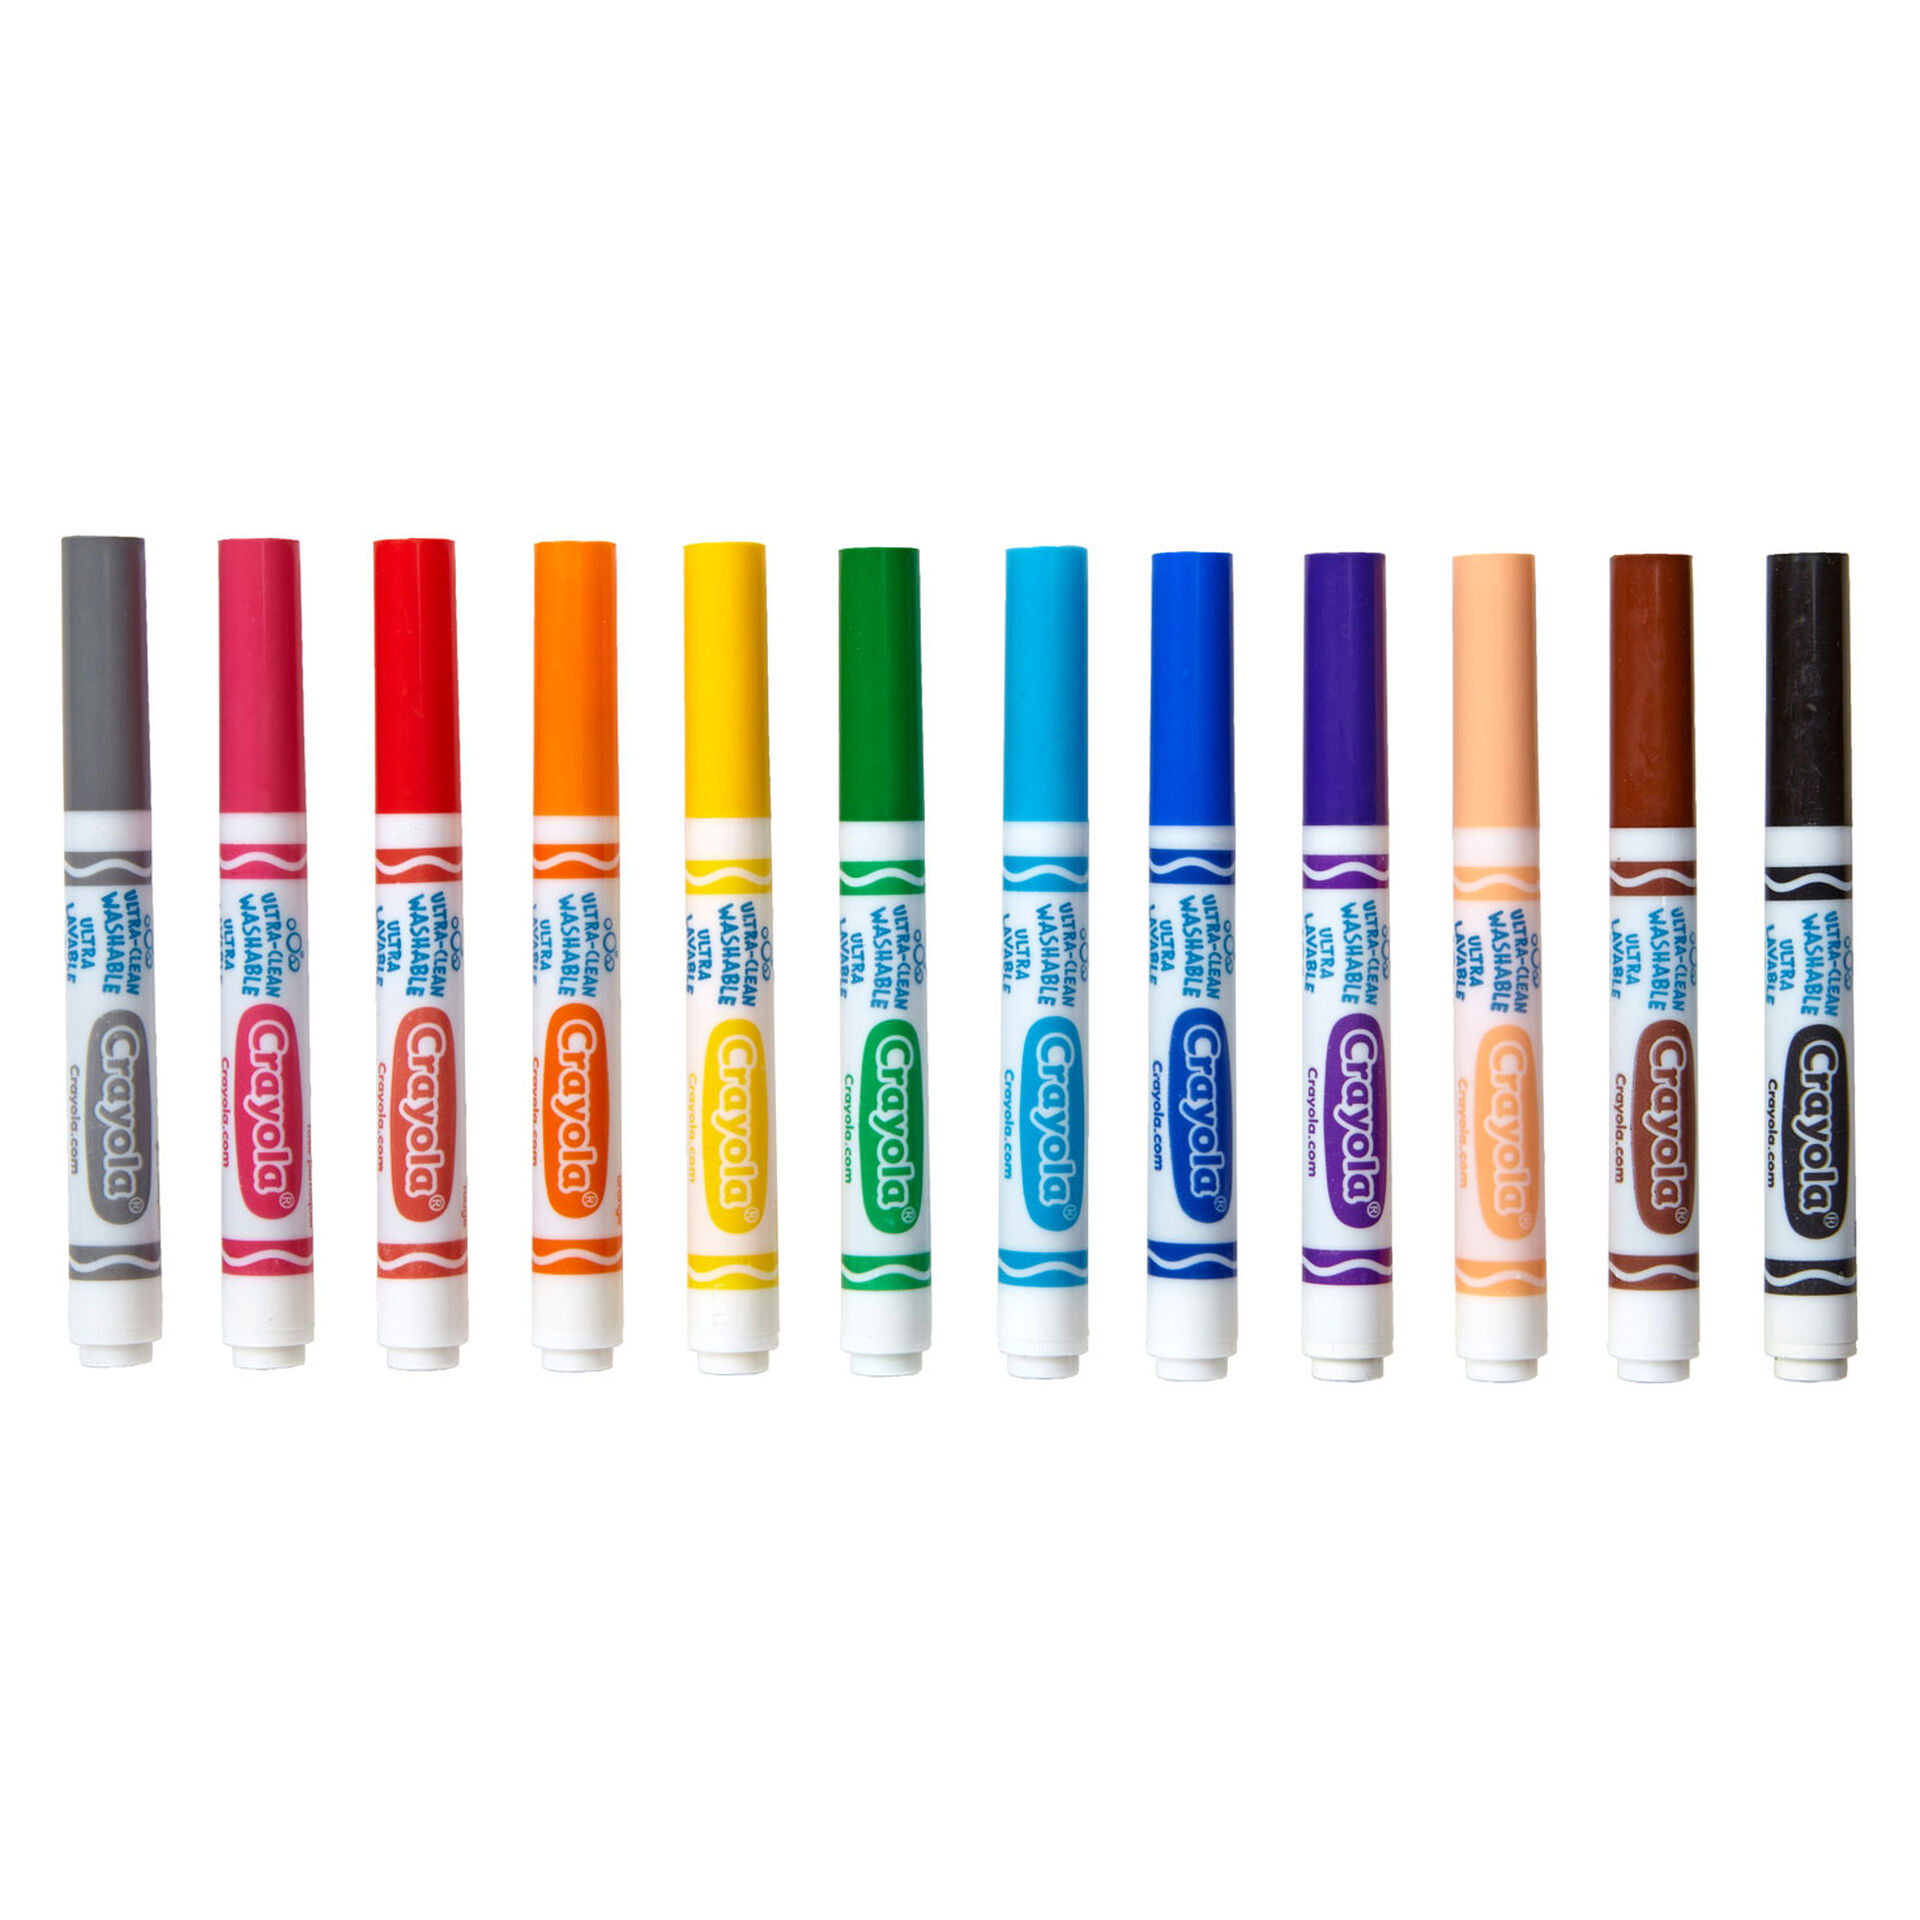 Crayola Washable Broad Line Markers 12 Count Arts Crafts Hallmark